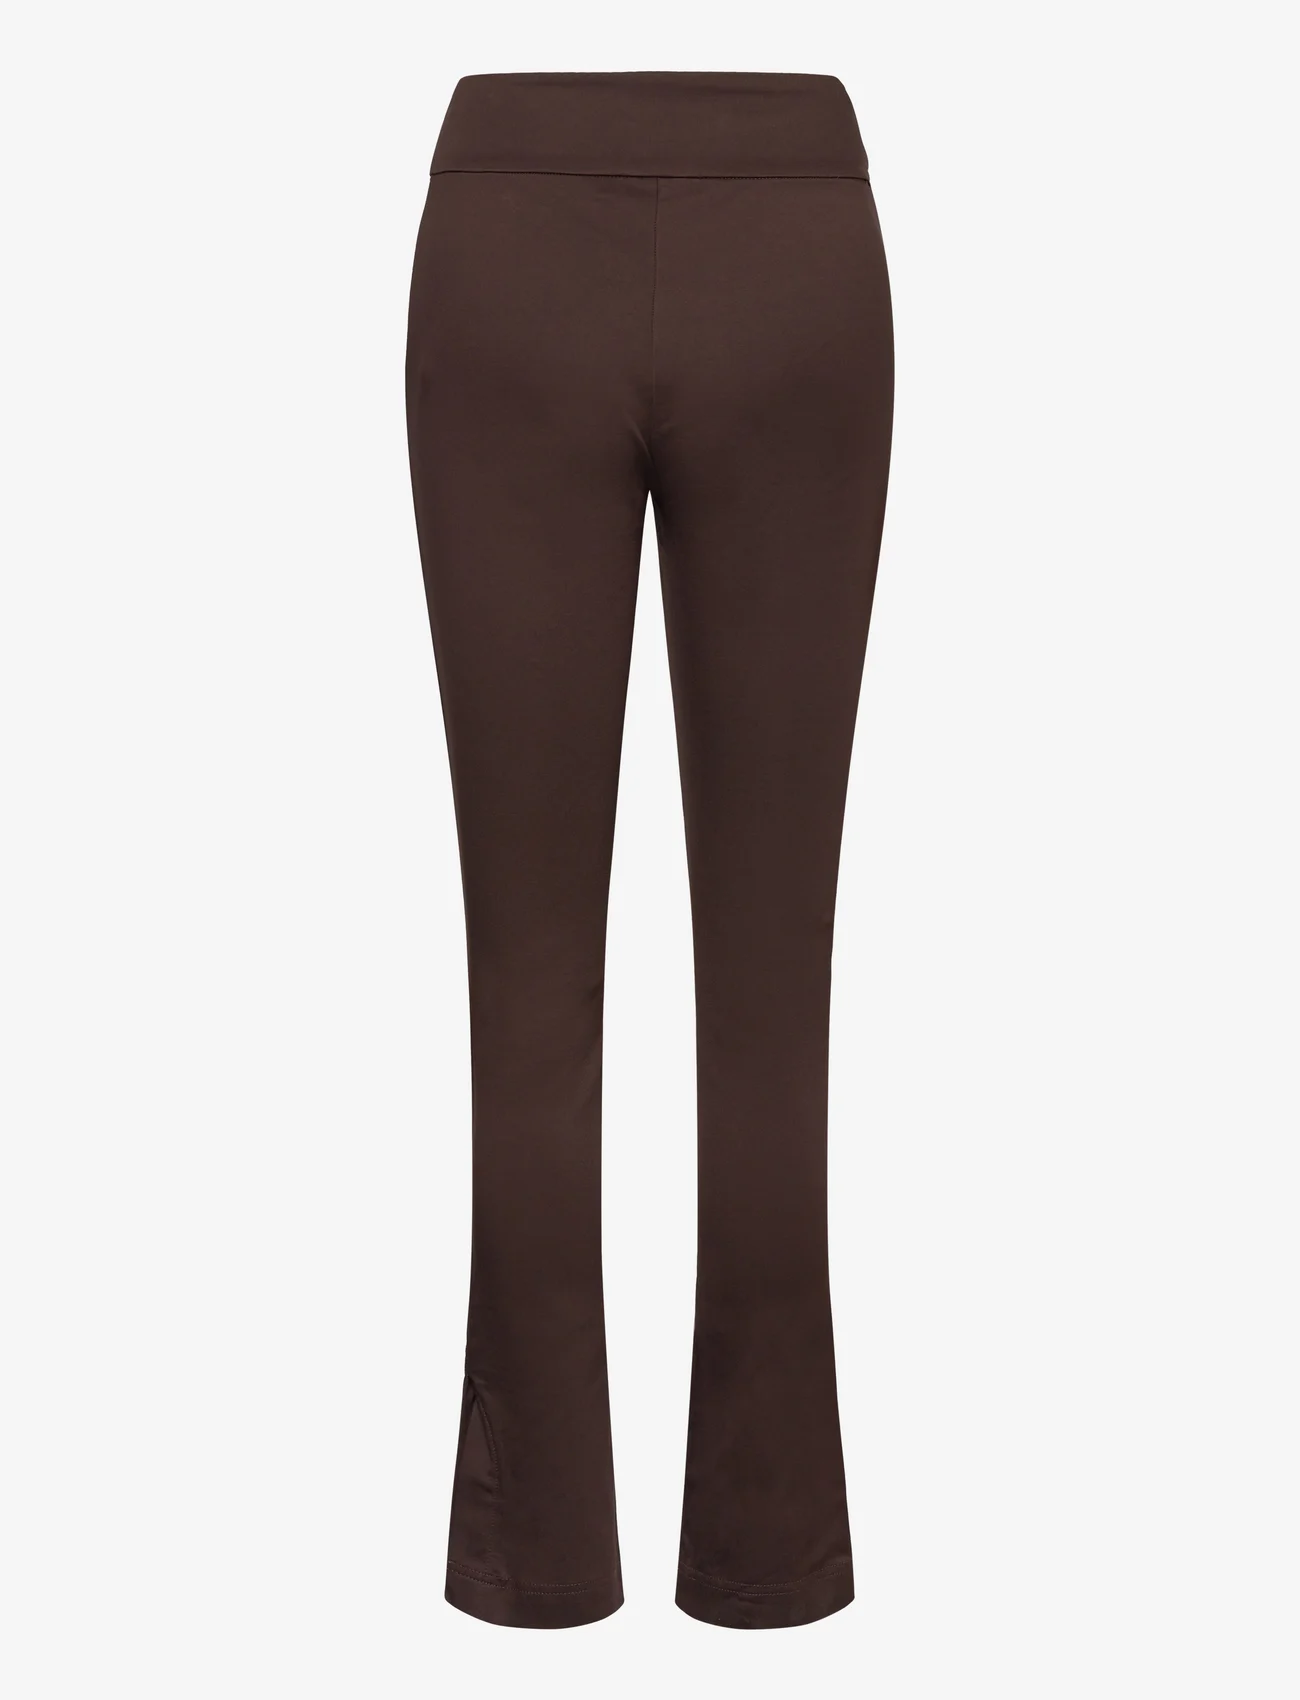 Rosemunde - Trousers w/ slit - slim-fit broeken - black brown - 1